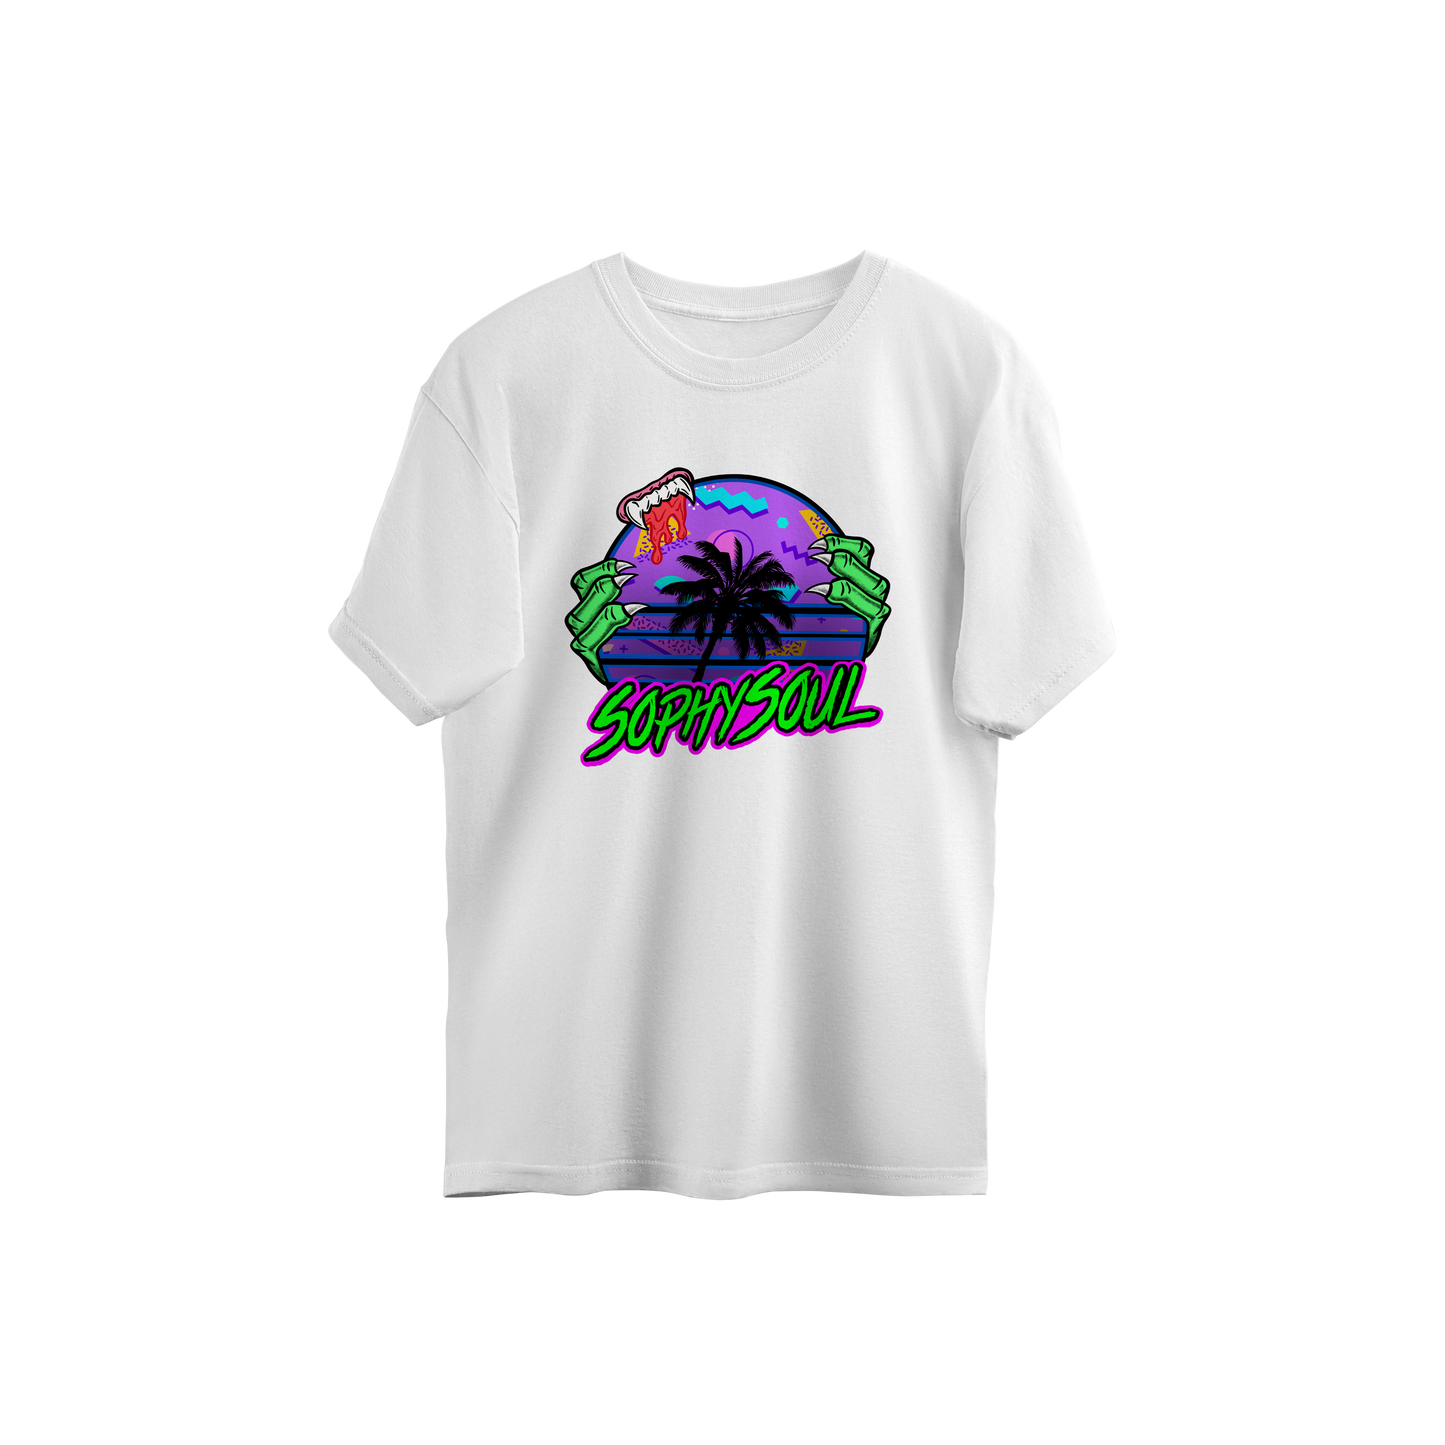 SophySoul T-Shirt: Retro